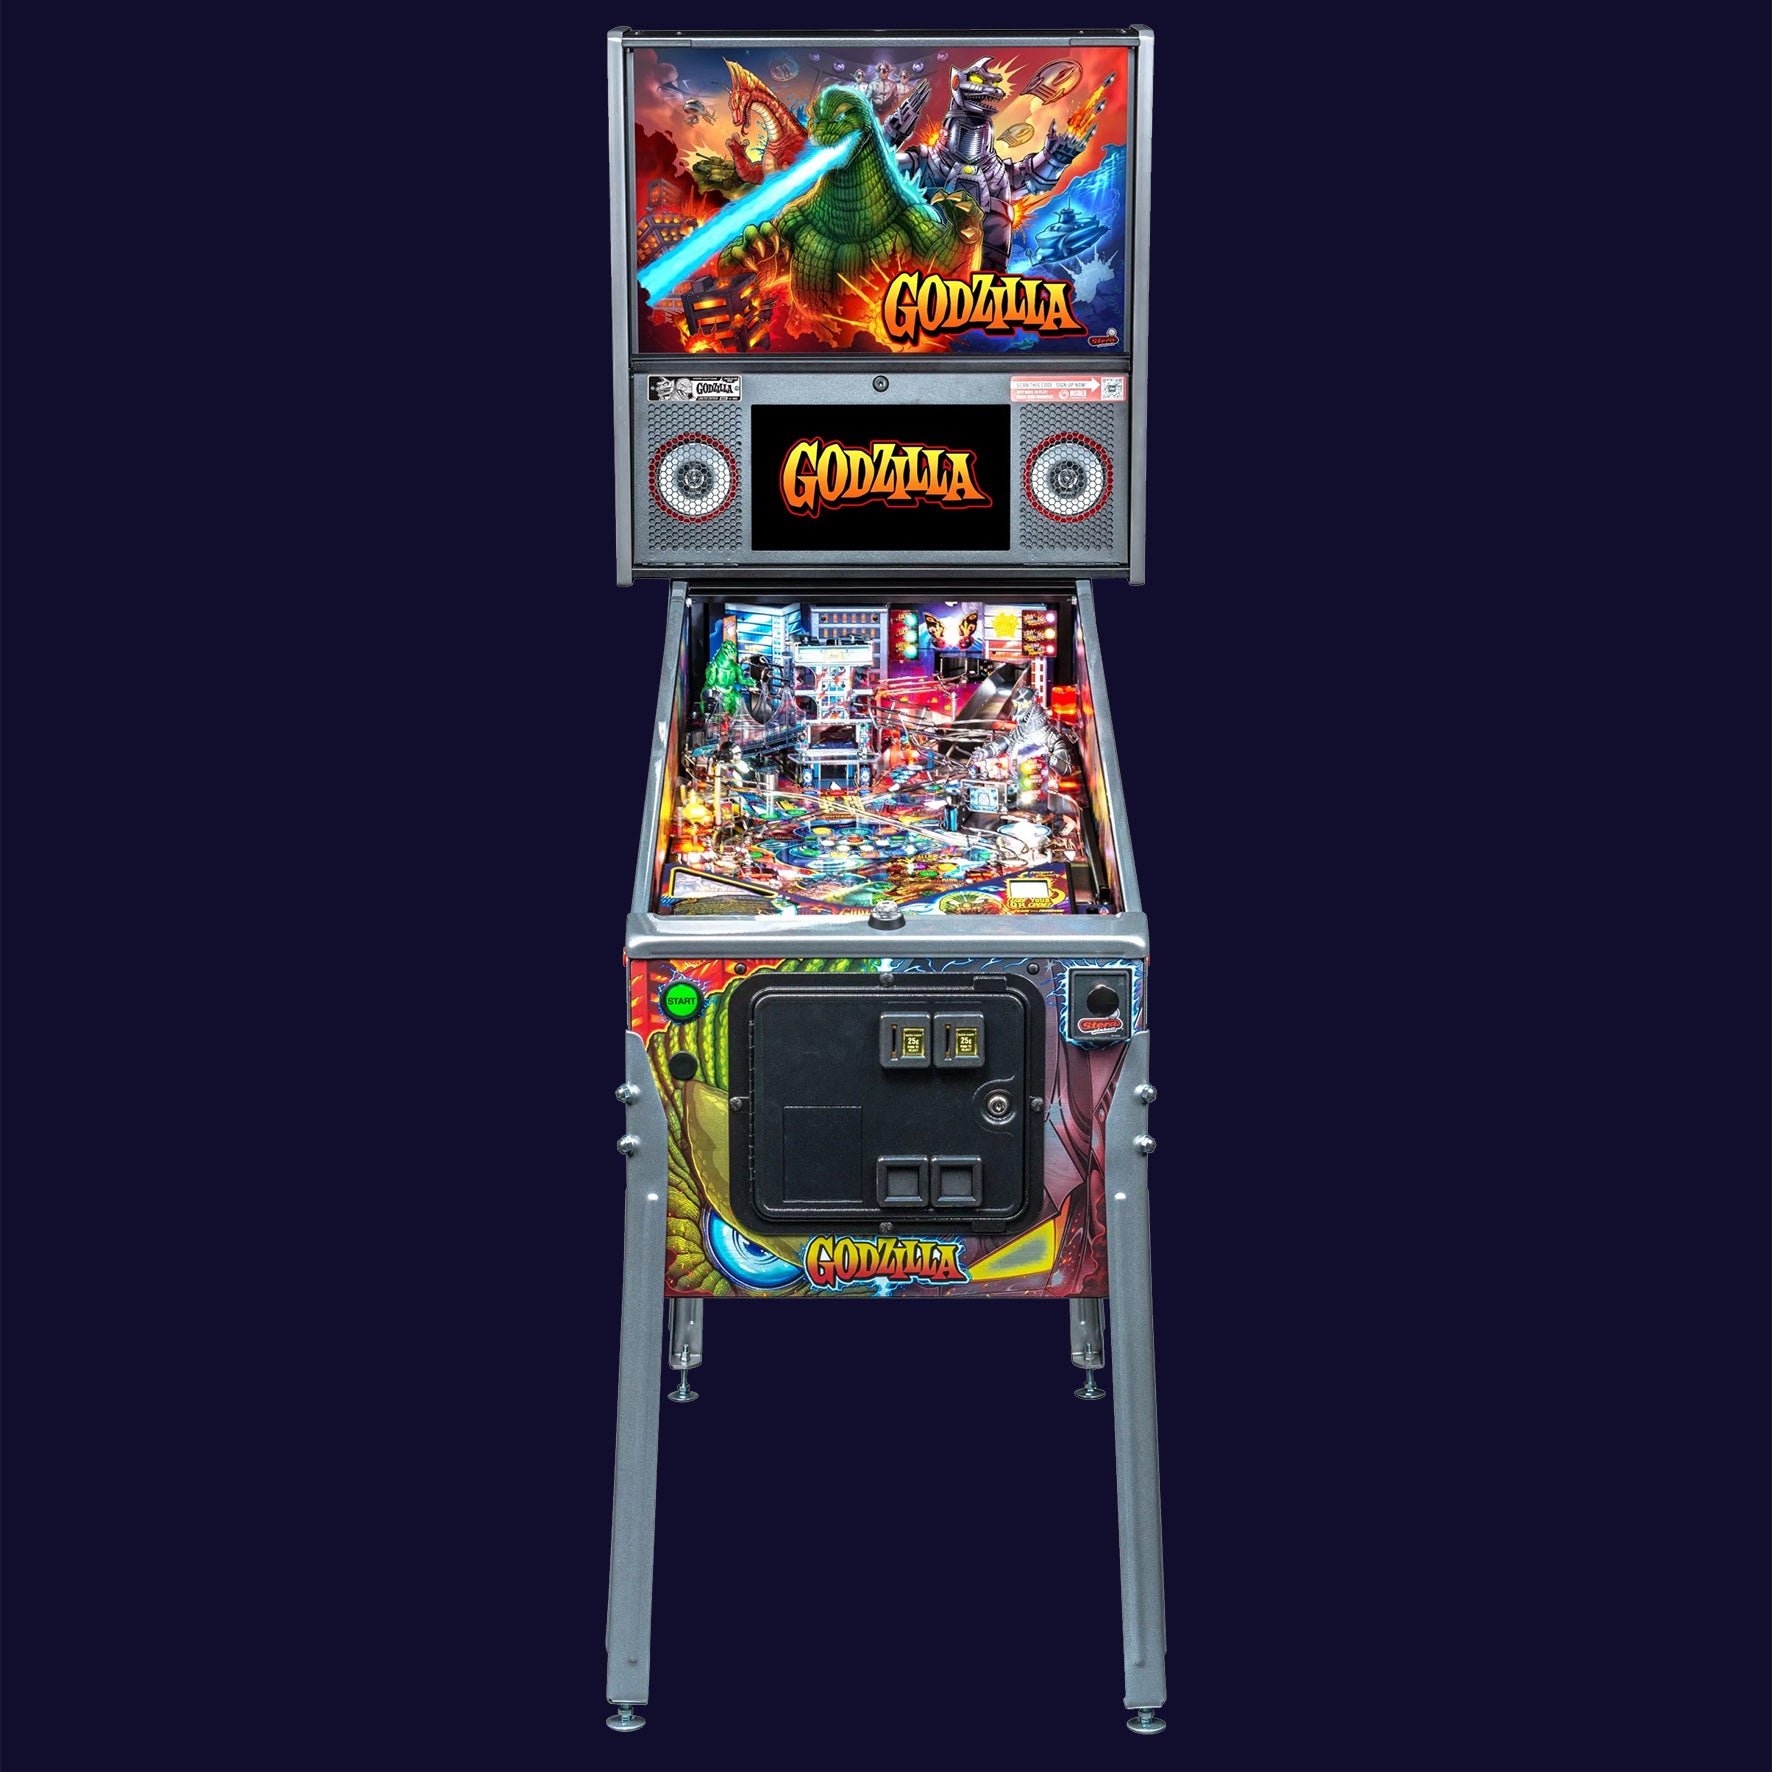 2021 Godzilla Limited Edition Pinball Machine  by Stern